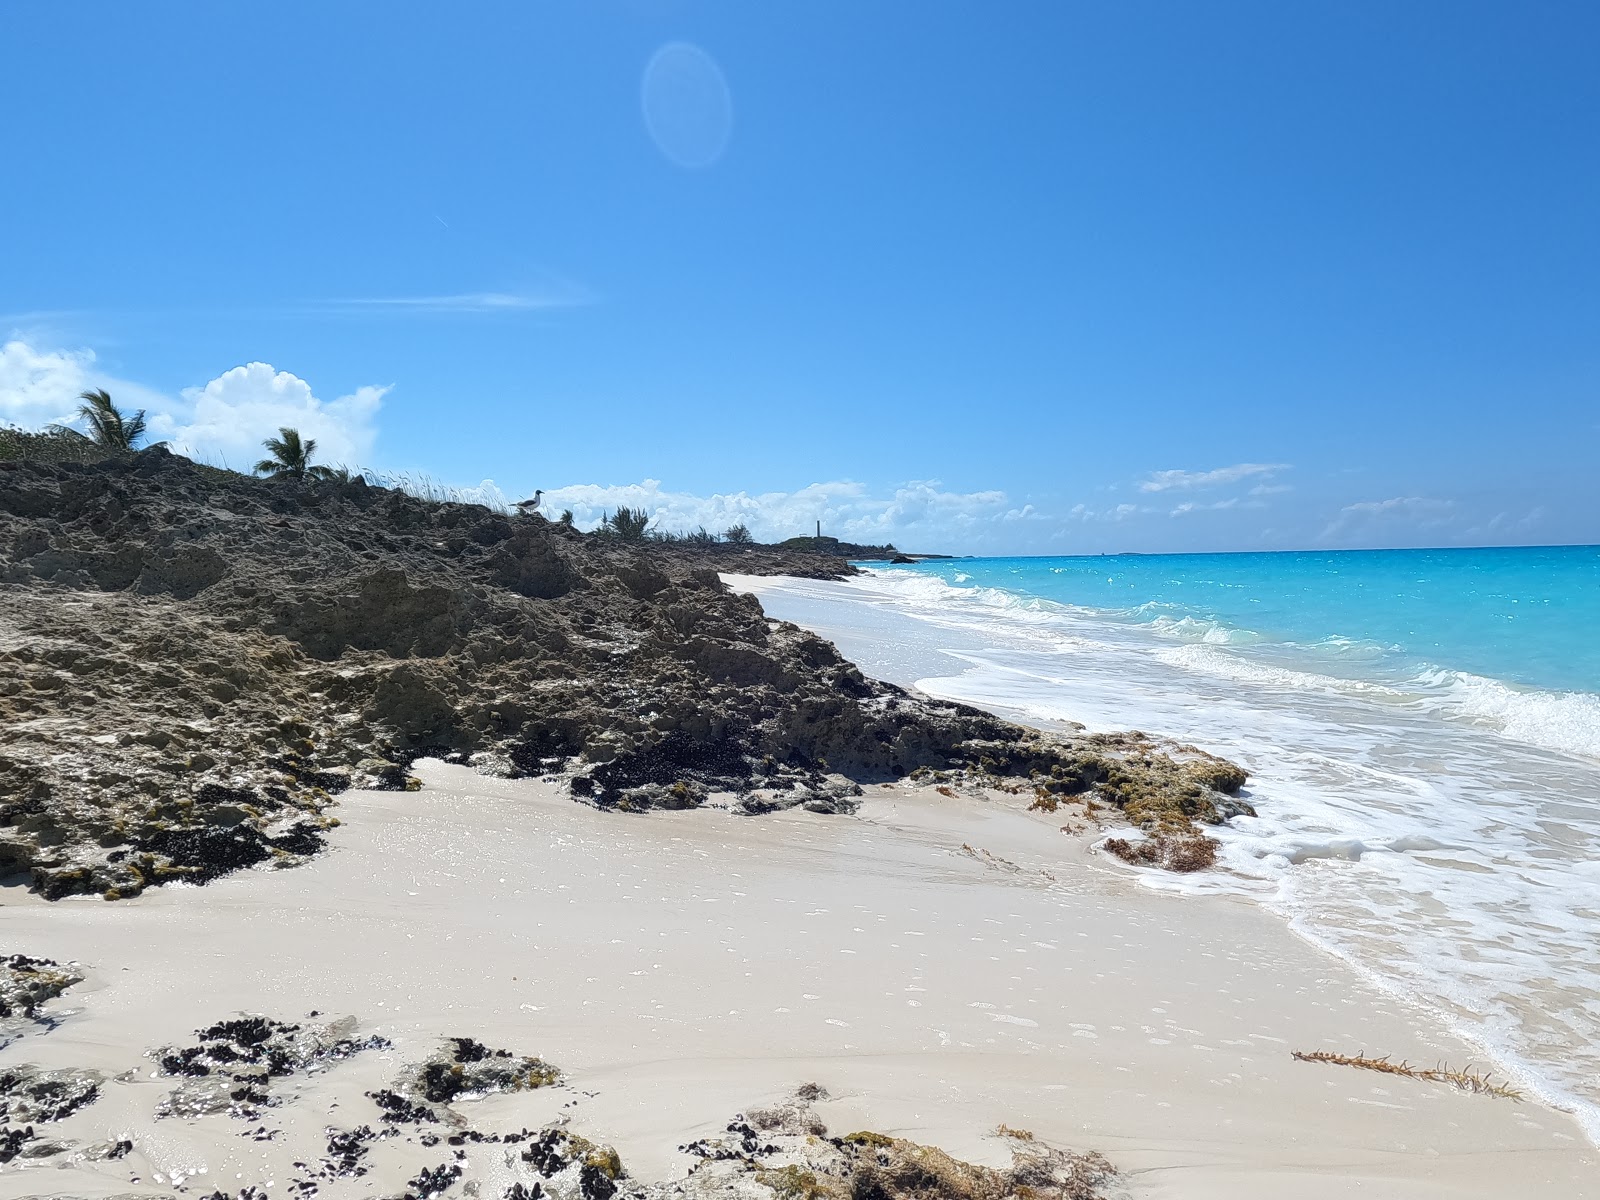 Fotografie cu Santanna's beach cu o suprafață de nisip strălucitor și pietre